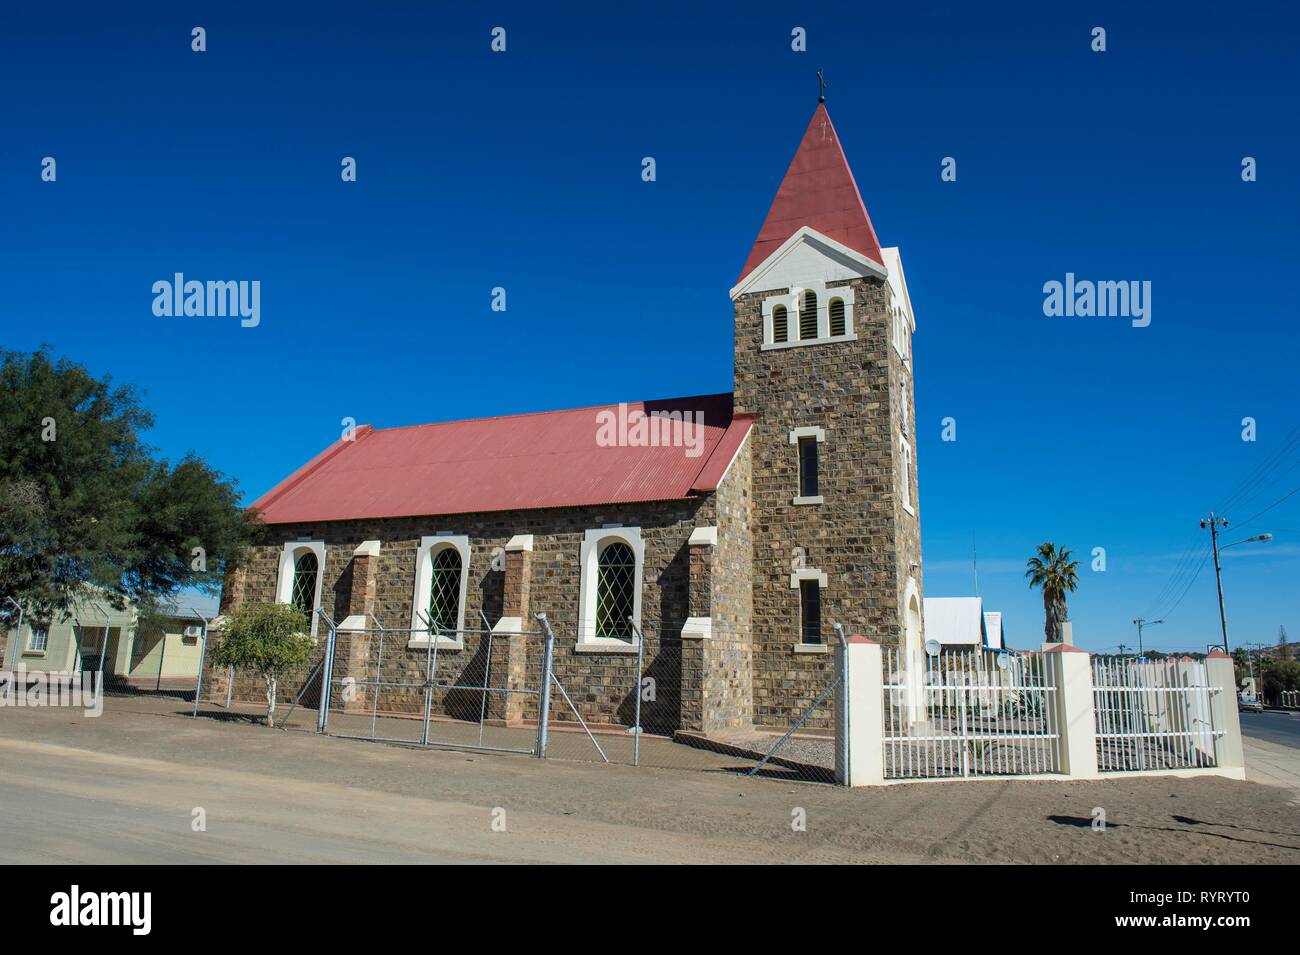 Vieille église allemande de la période coloniale, Ketmanshoop, Namibie Banque D'Images